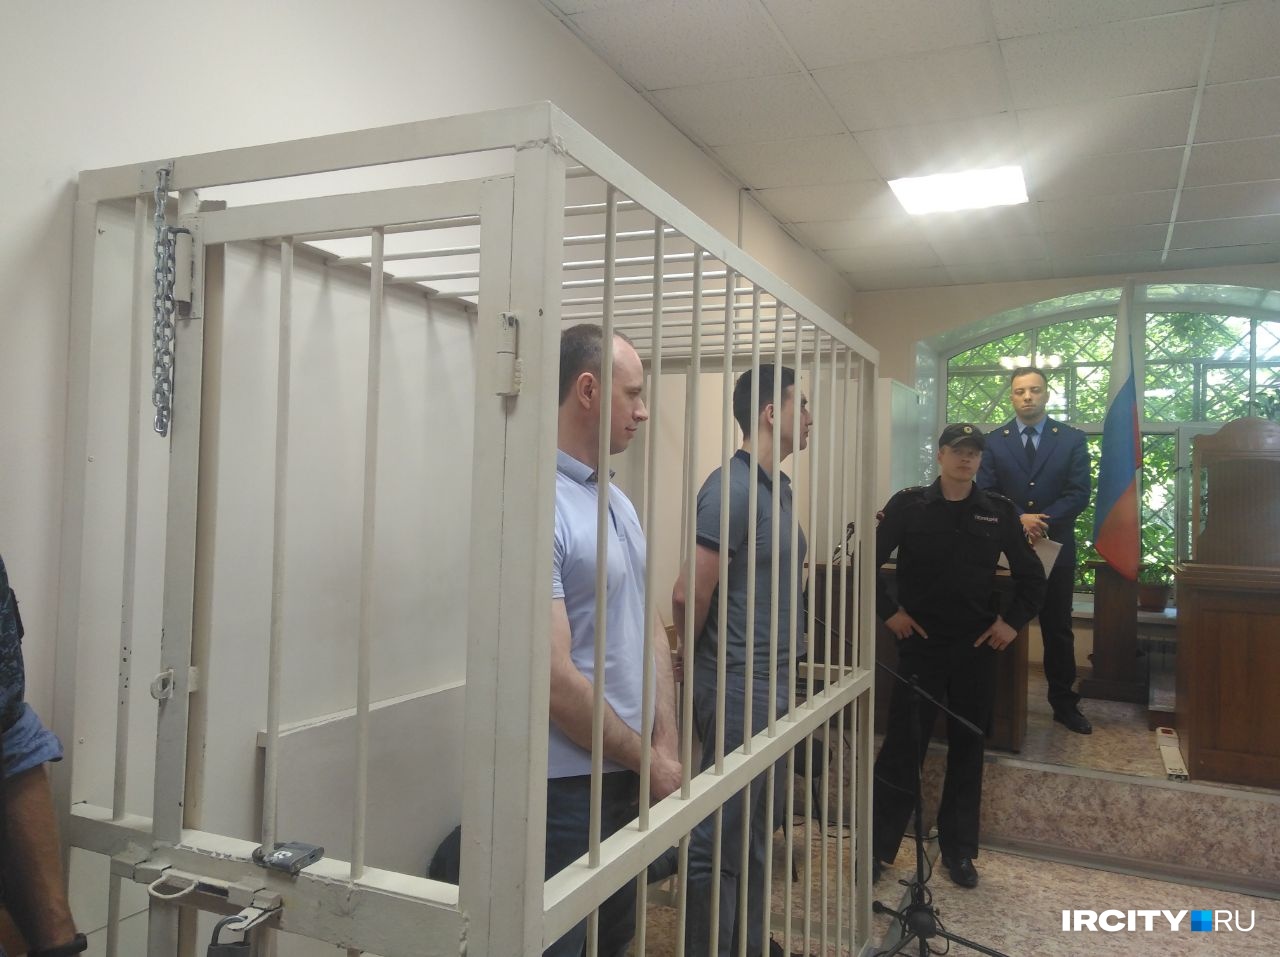 Олег Хамуляк и Антон Рябикин получили 15 лет колонии на двоих по делу о замене лифтов в Приангарье